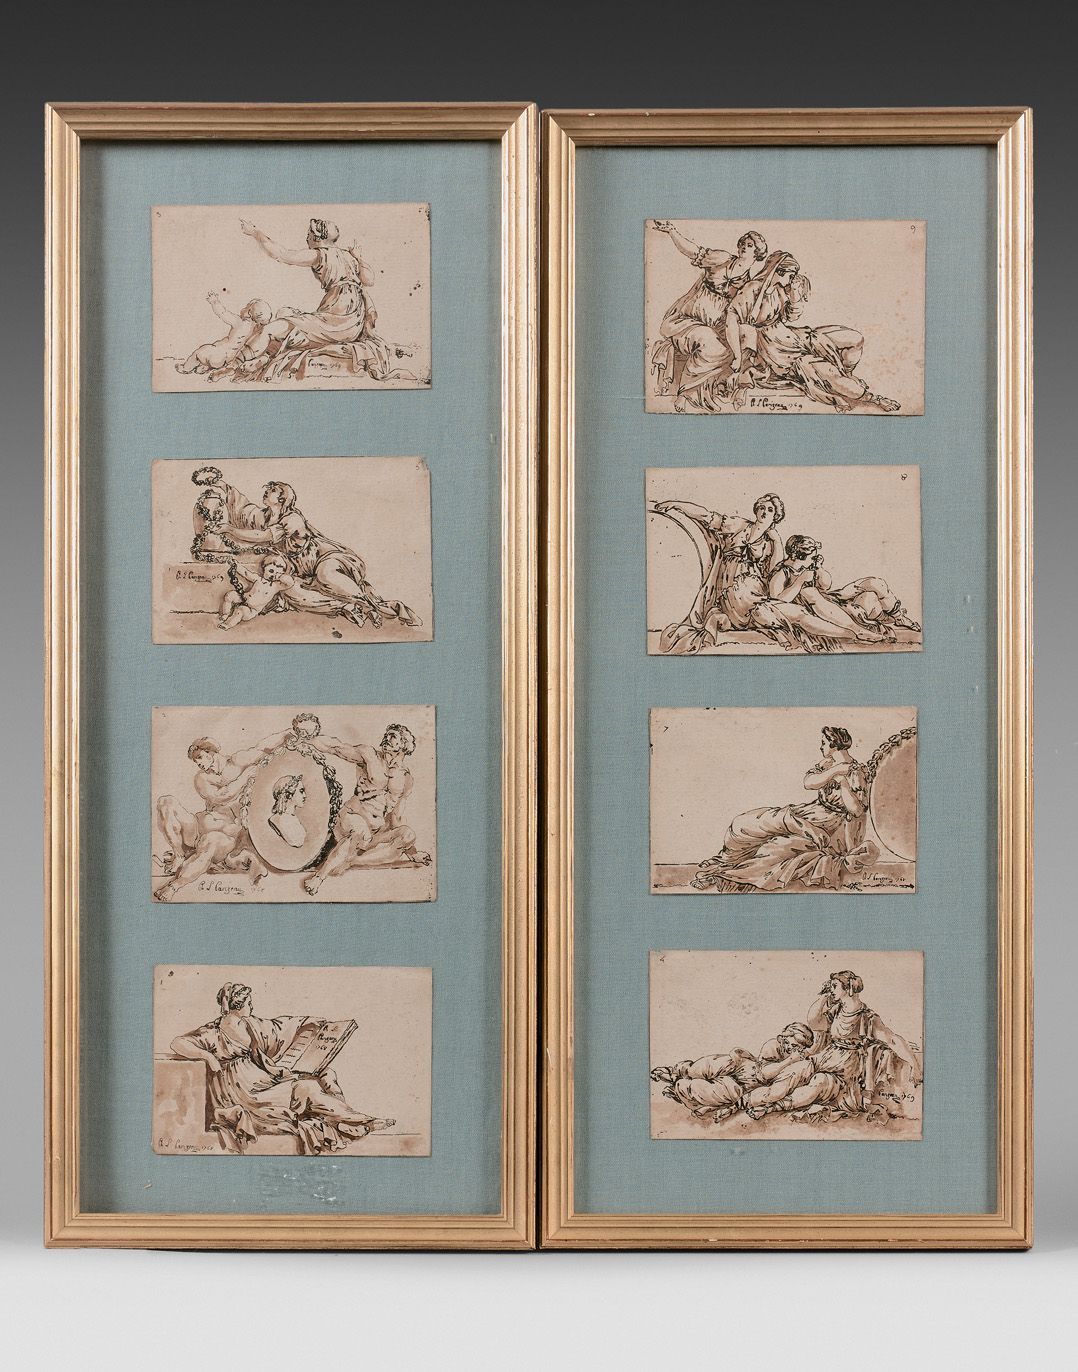 Null Philippe-Louis PARIZEAU (1740-1801)

Étude de figures

Huit dessins à l’enc&hellip;